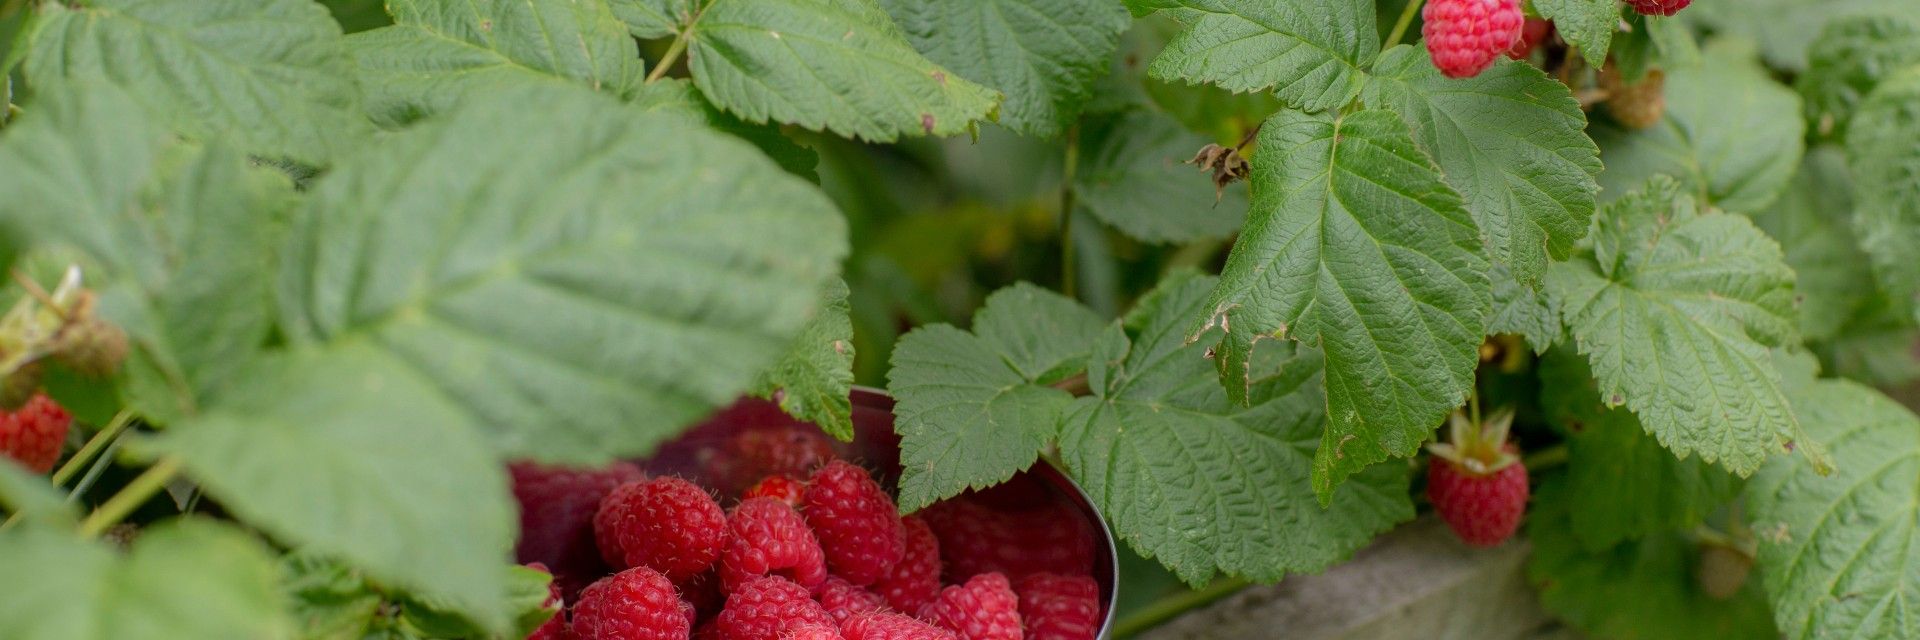 Raspberry bush full of fruit with a bowl full of raspberries